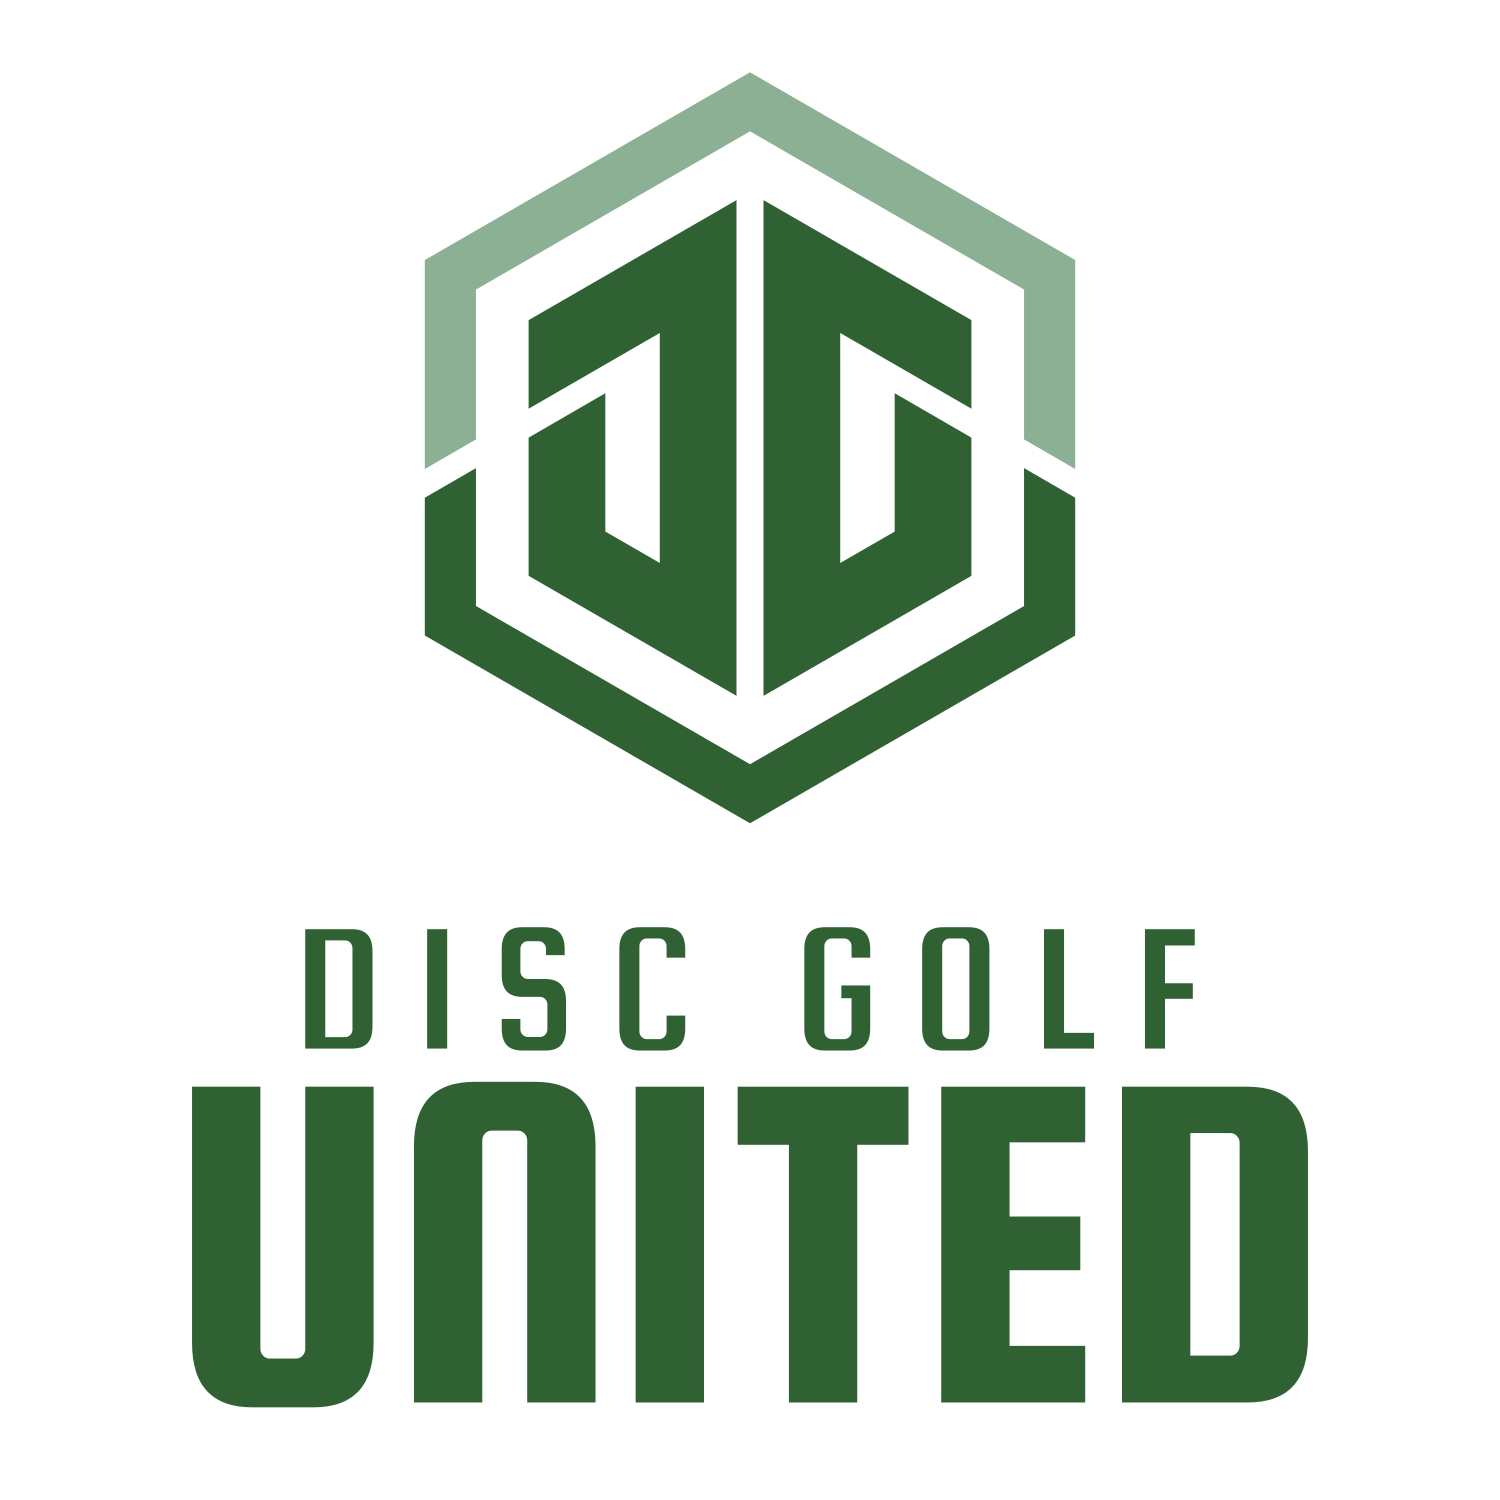 Weighing Disc Golf Discs - Disc Golf Puttheads